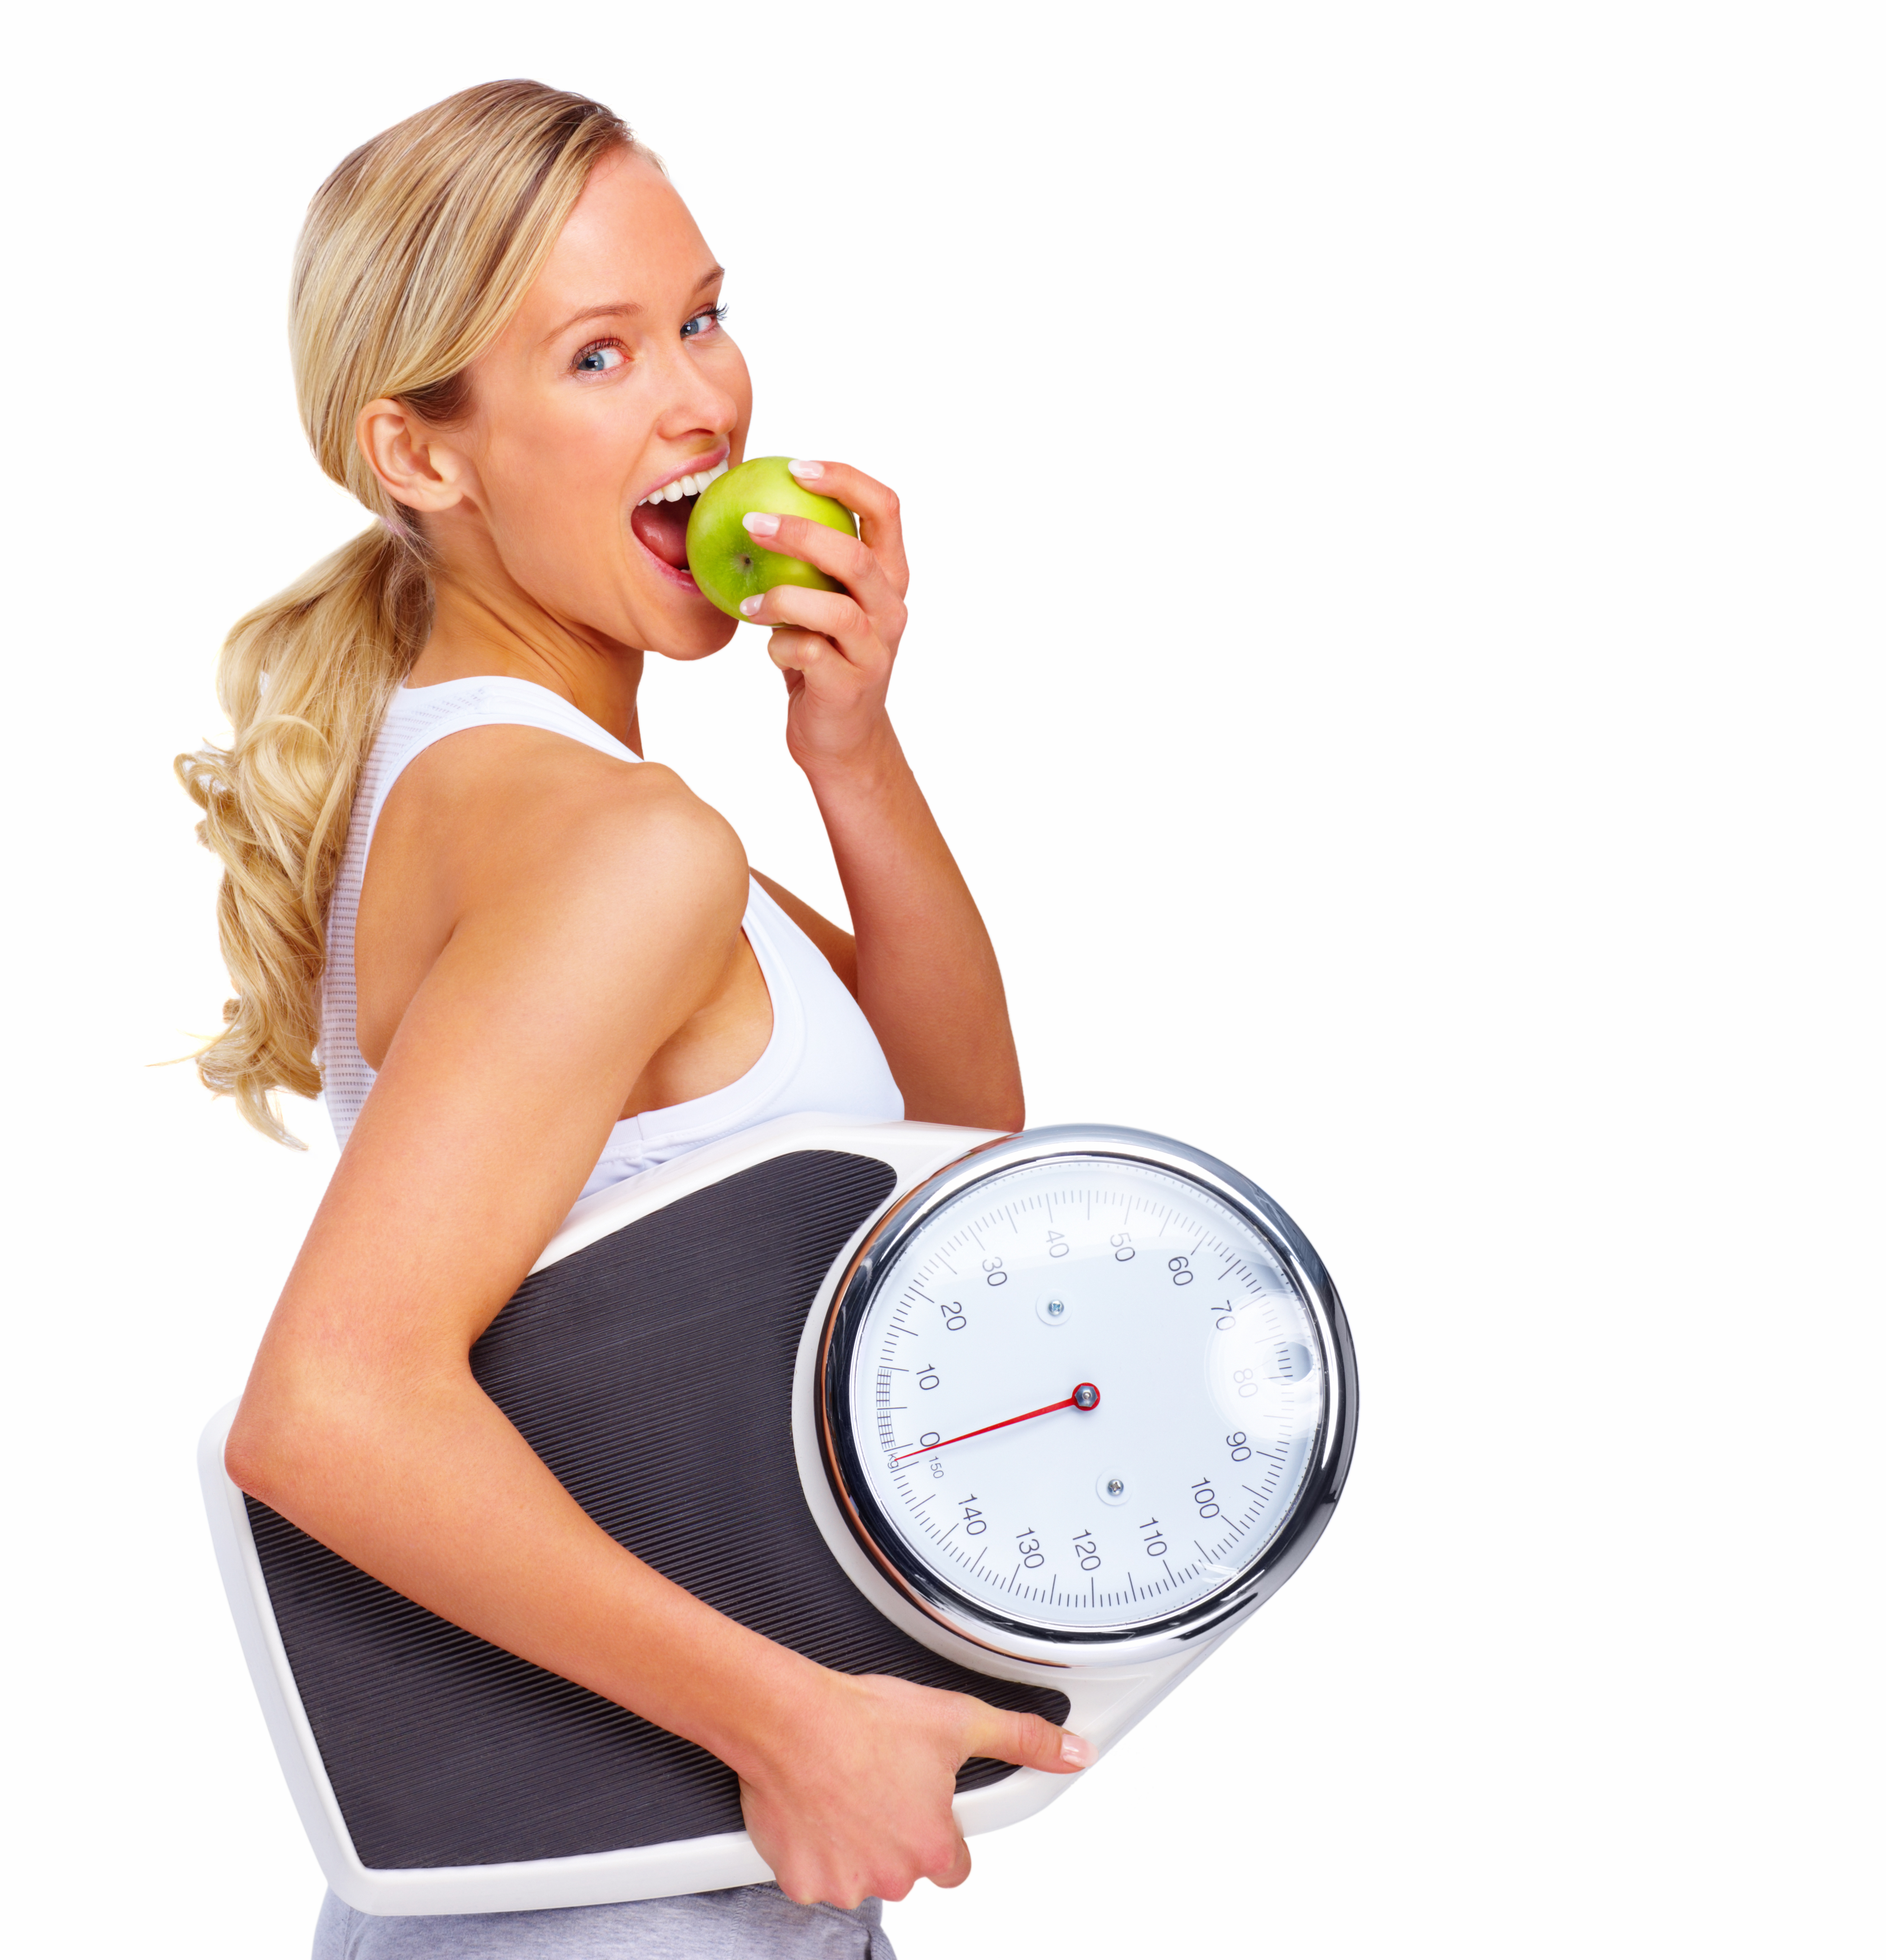 Как Правильно Сбросить Лишний Вес